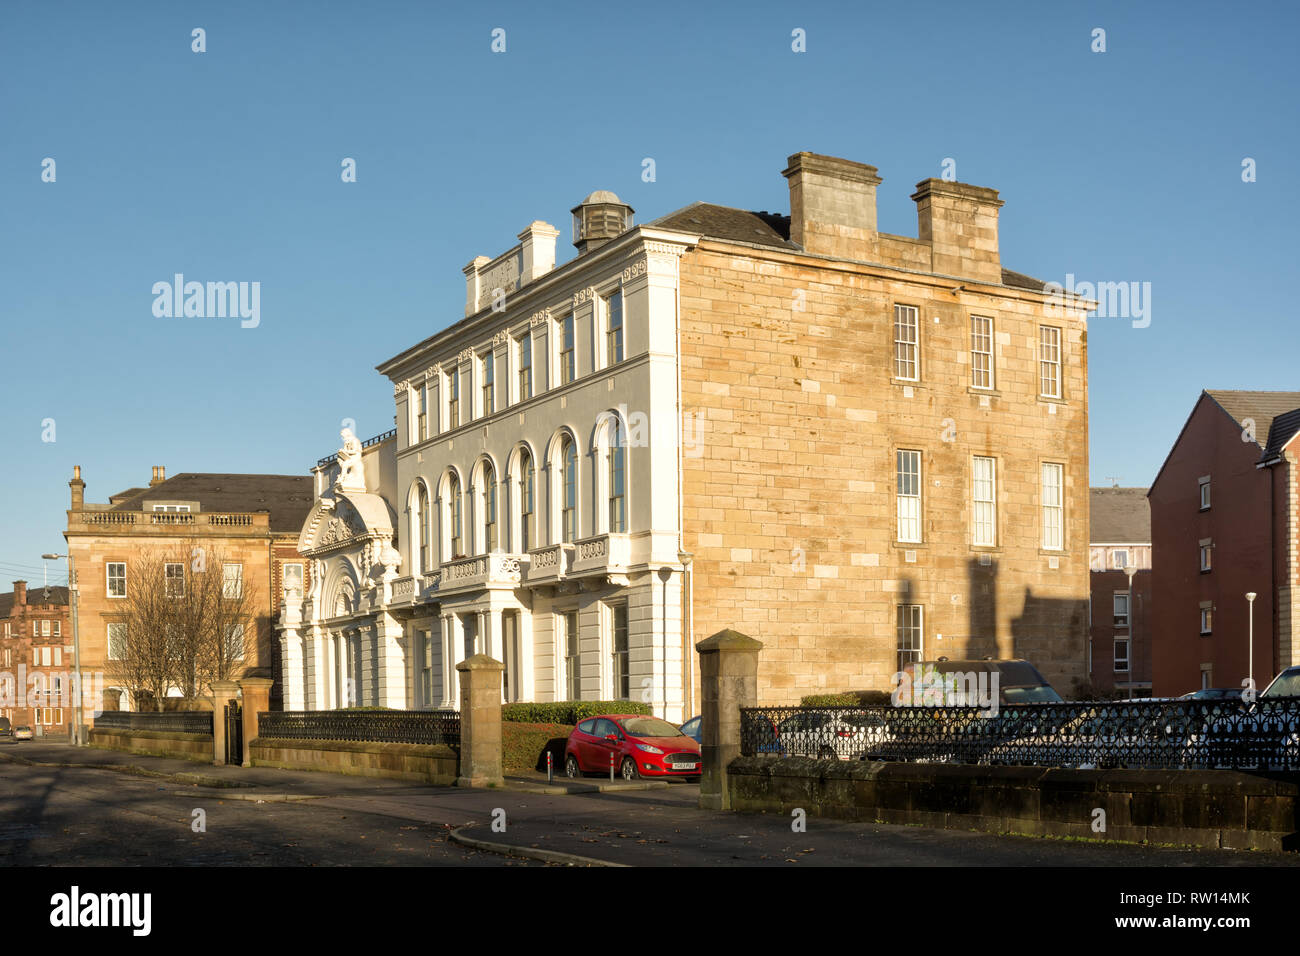 Glasgow, UK - January 01, 2019: Former Greenview School now residential development in Glasgow, Scotland Stock Photo